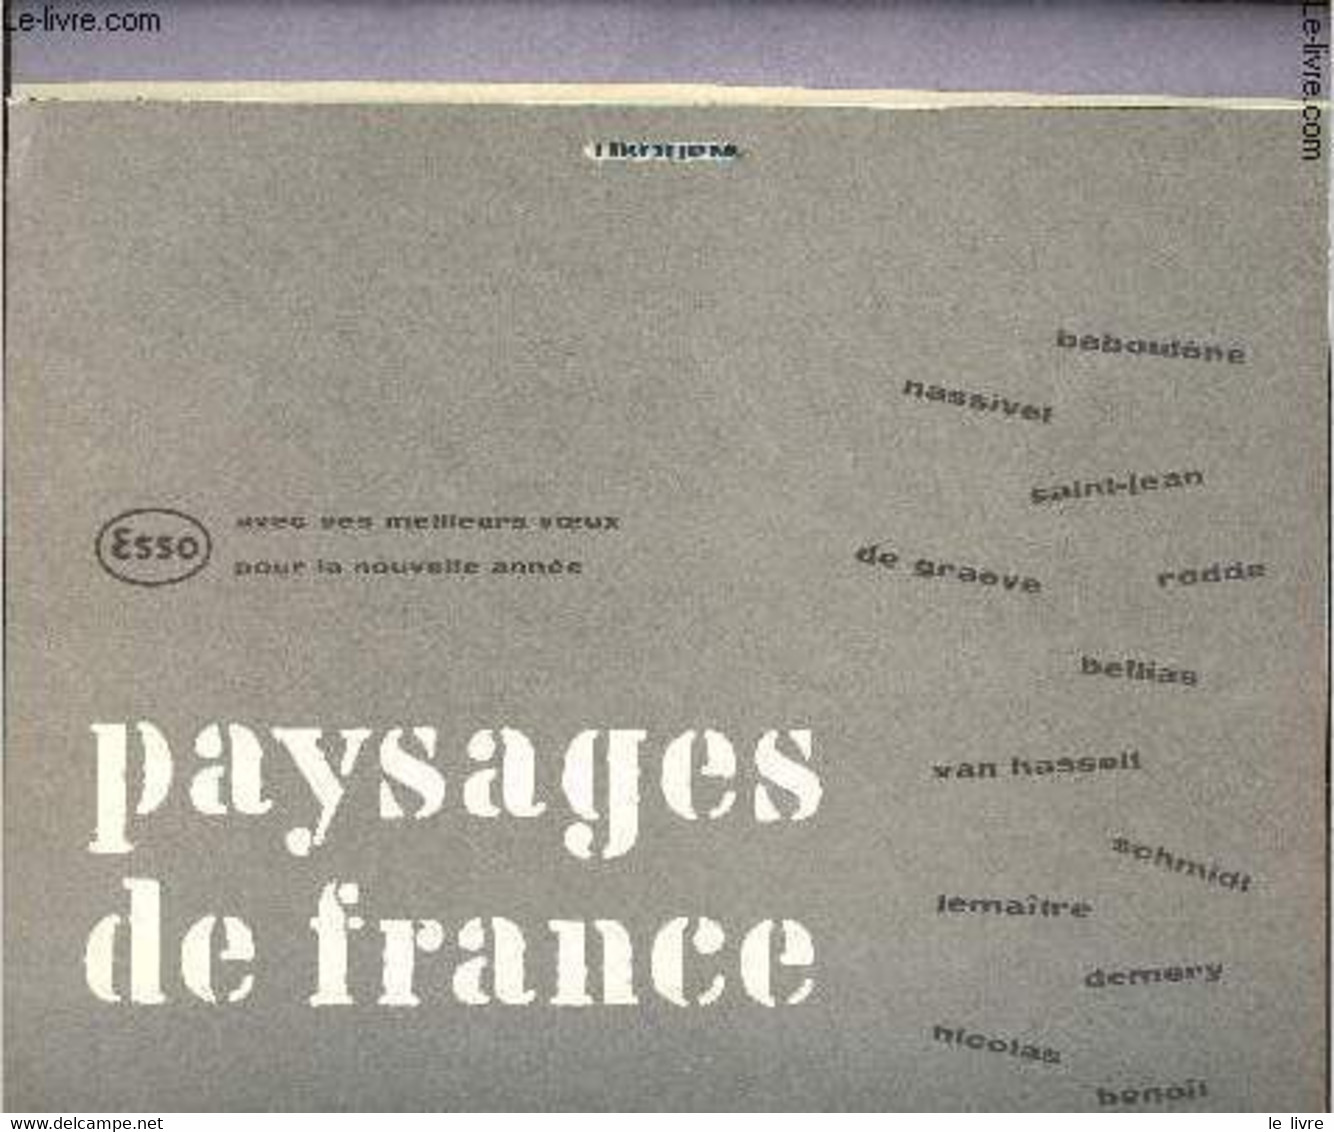 Calendrier Esso Service Du Libournais - Paysages De France - 1959 - Esso Service Du Libournais - 1959 - Diaries